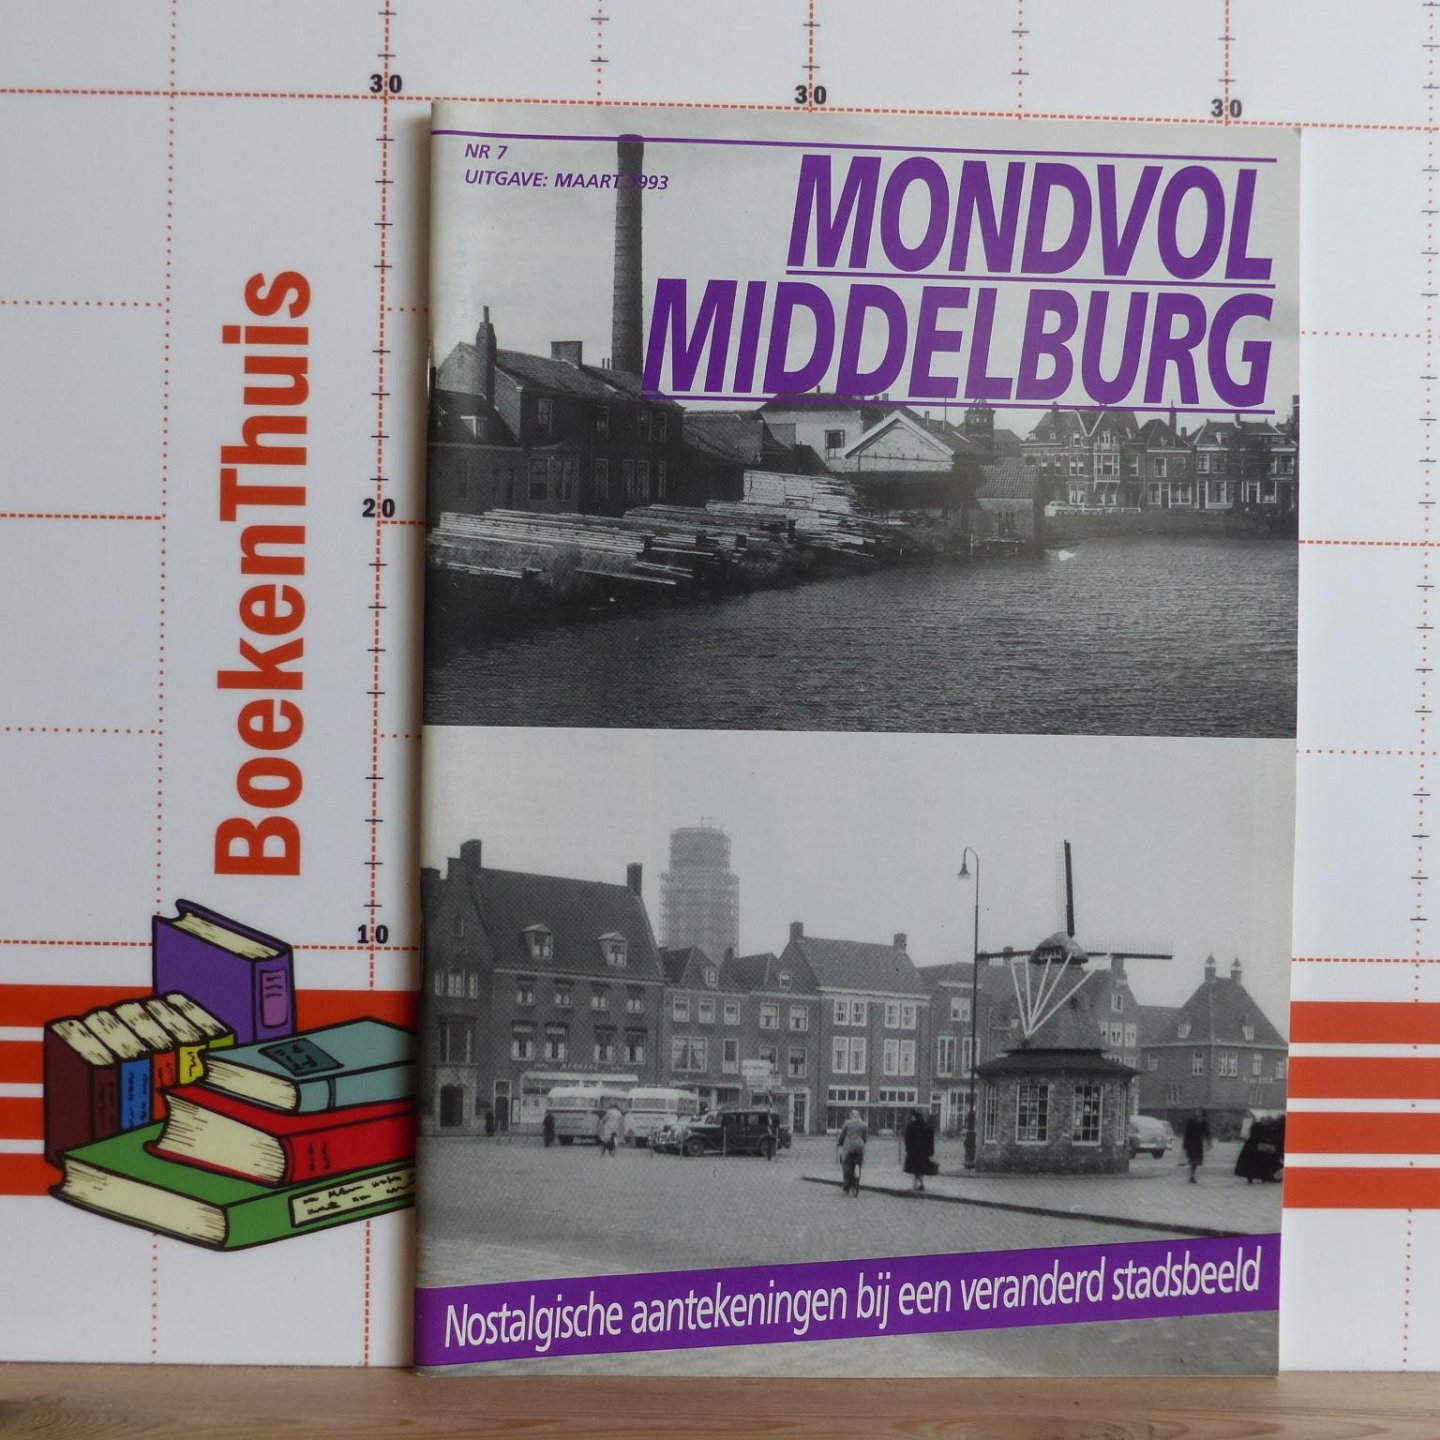 Cats, Jacques - mondvol Middelburg - 7 - nostalgische aantekeningen bij een veranderd stadsbeeld